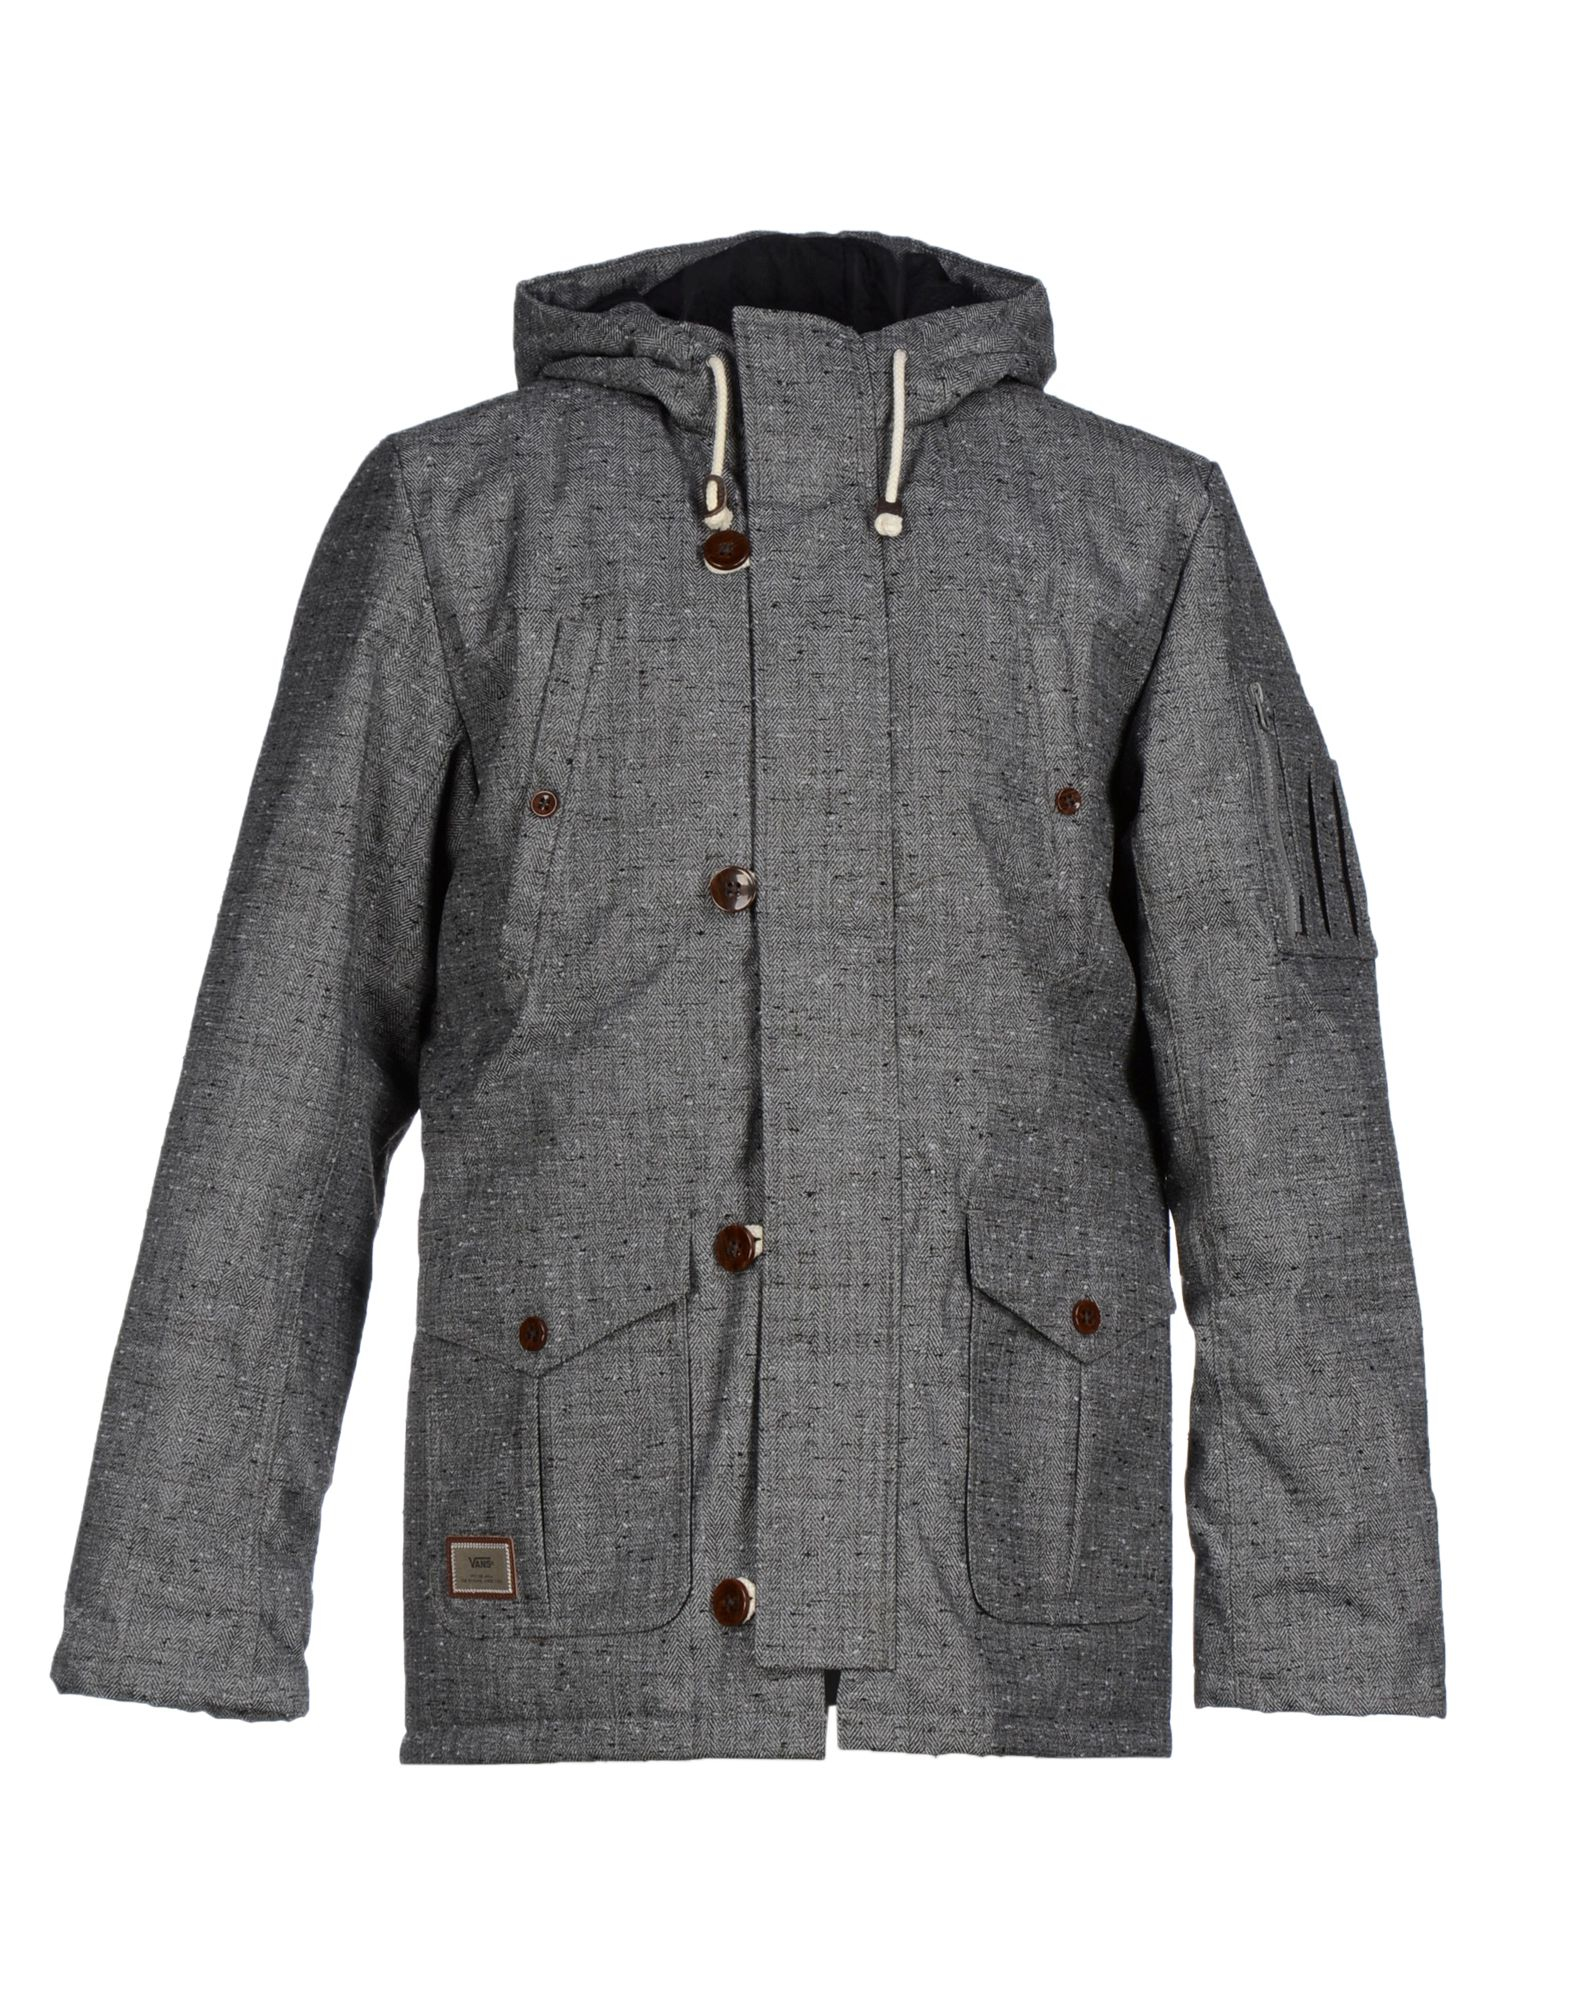 Vans Jacket in Grey (Gray) for Men - Lyst